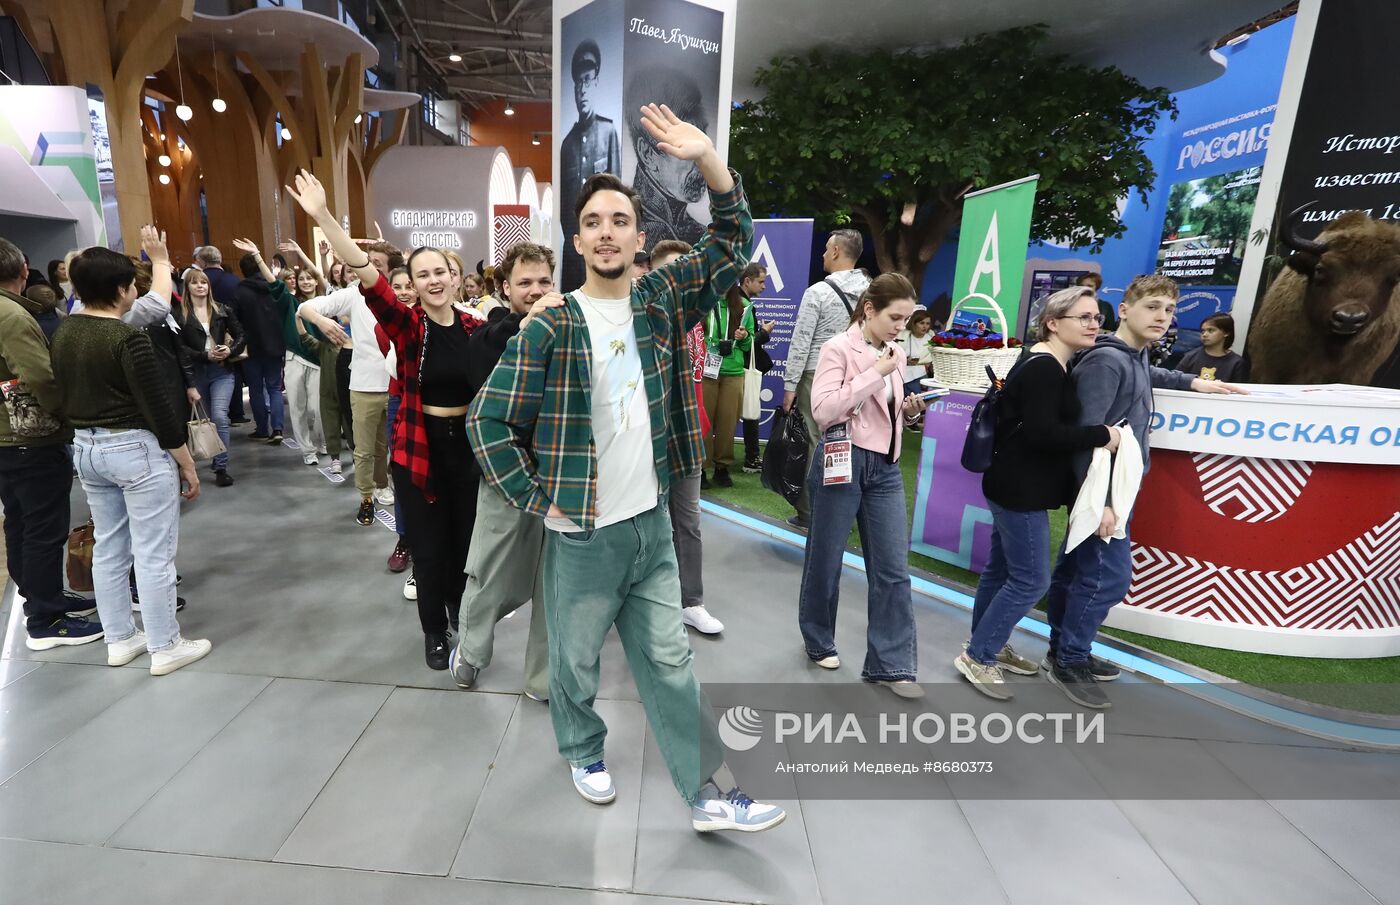 Выставка "Россия". Танцевальный флешмоб